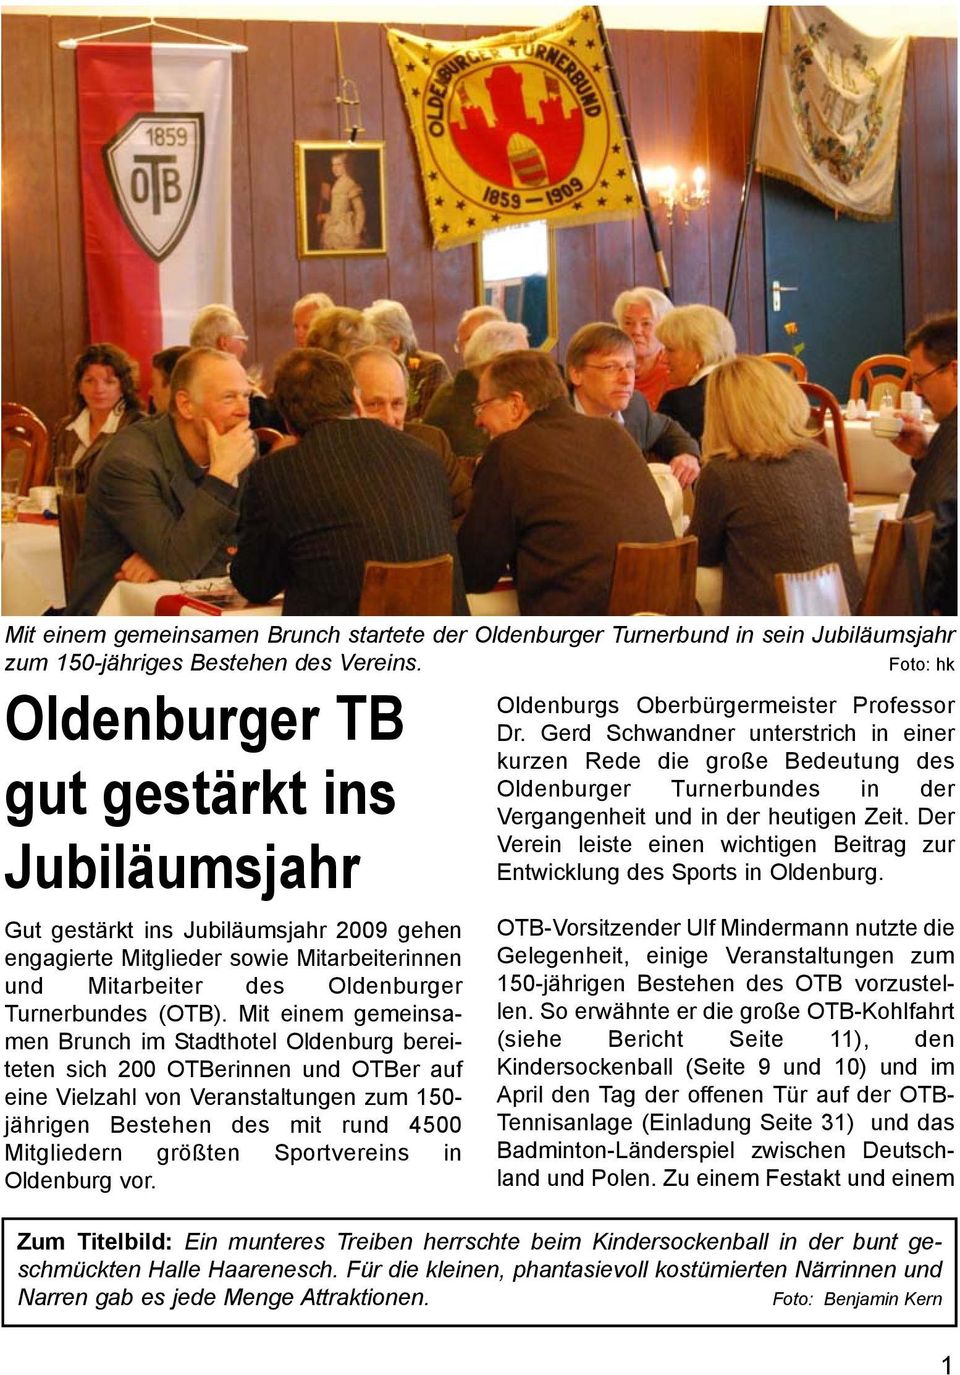 Mit einem gemeinsamen Brunch im Stadthotel Oldenburg bereiteten sich 200 OTBerinnen und OTBer auf eine Vielzahl von Veranstaltungen zum 150- jährigen Bestehen des mit rund 4500 Mitgliedern größten